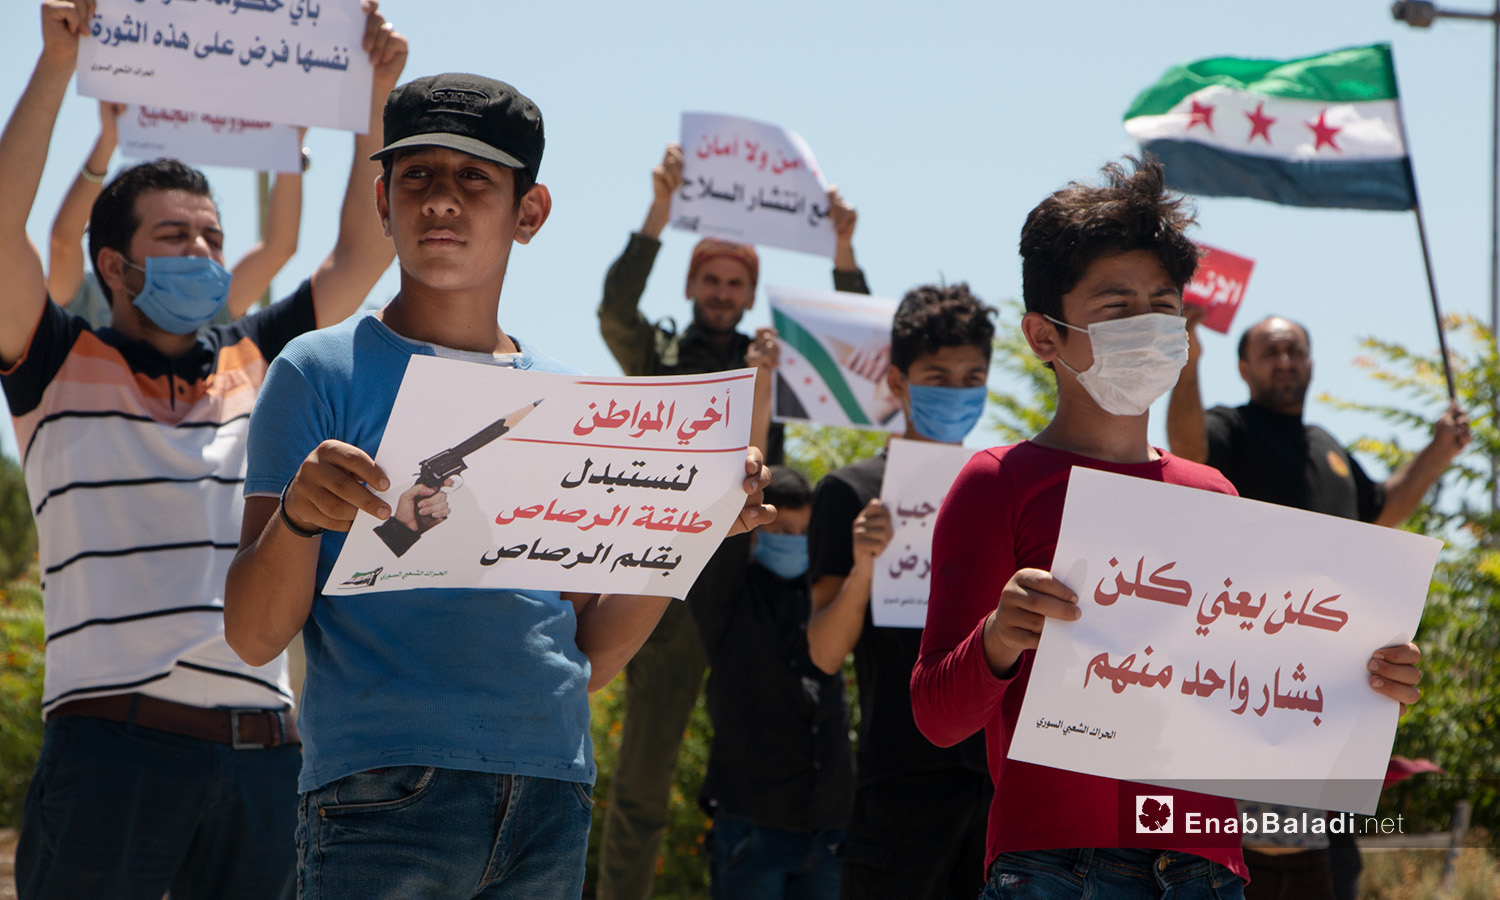 أطفال وشبان يحملون لافتات في وقفة احتجاجية بمدينة إدلب - 17 تموز 2020 (عنب بلدي/أنس الخولي)